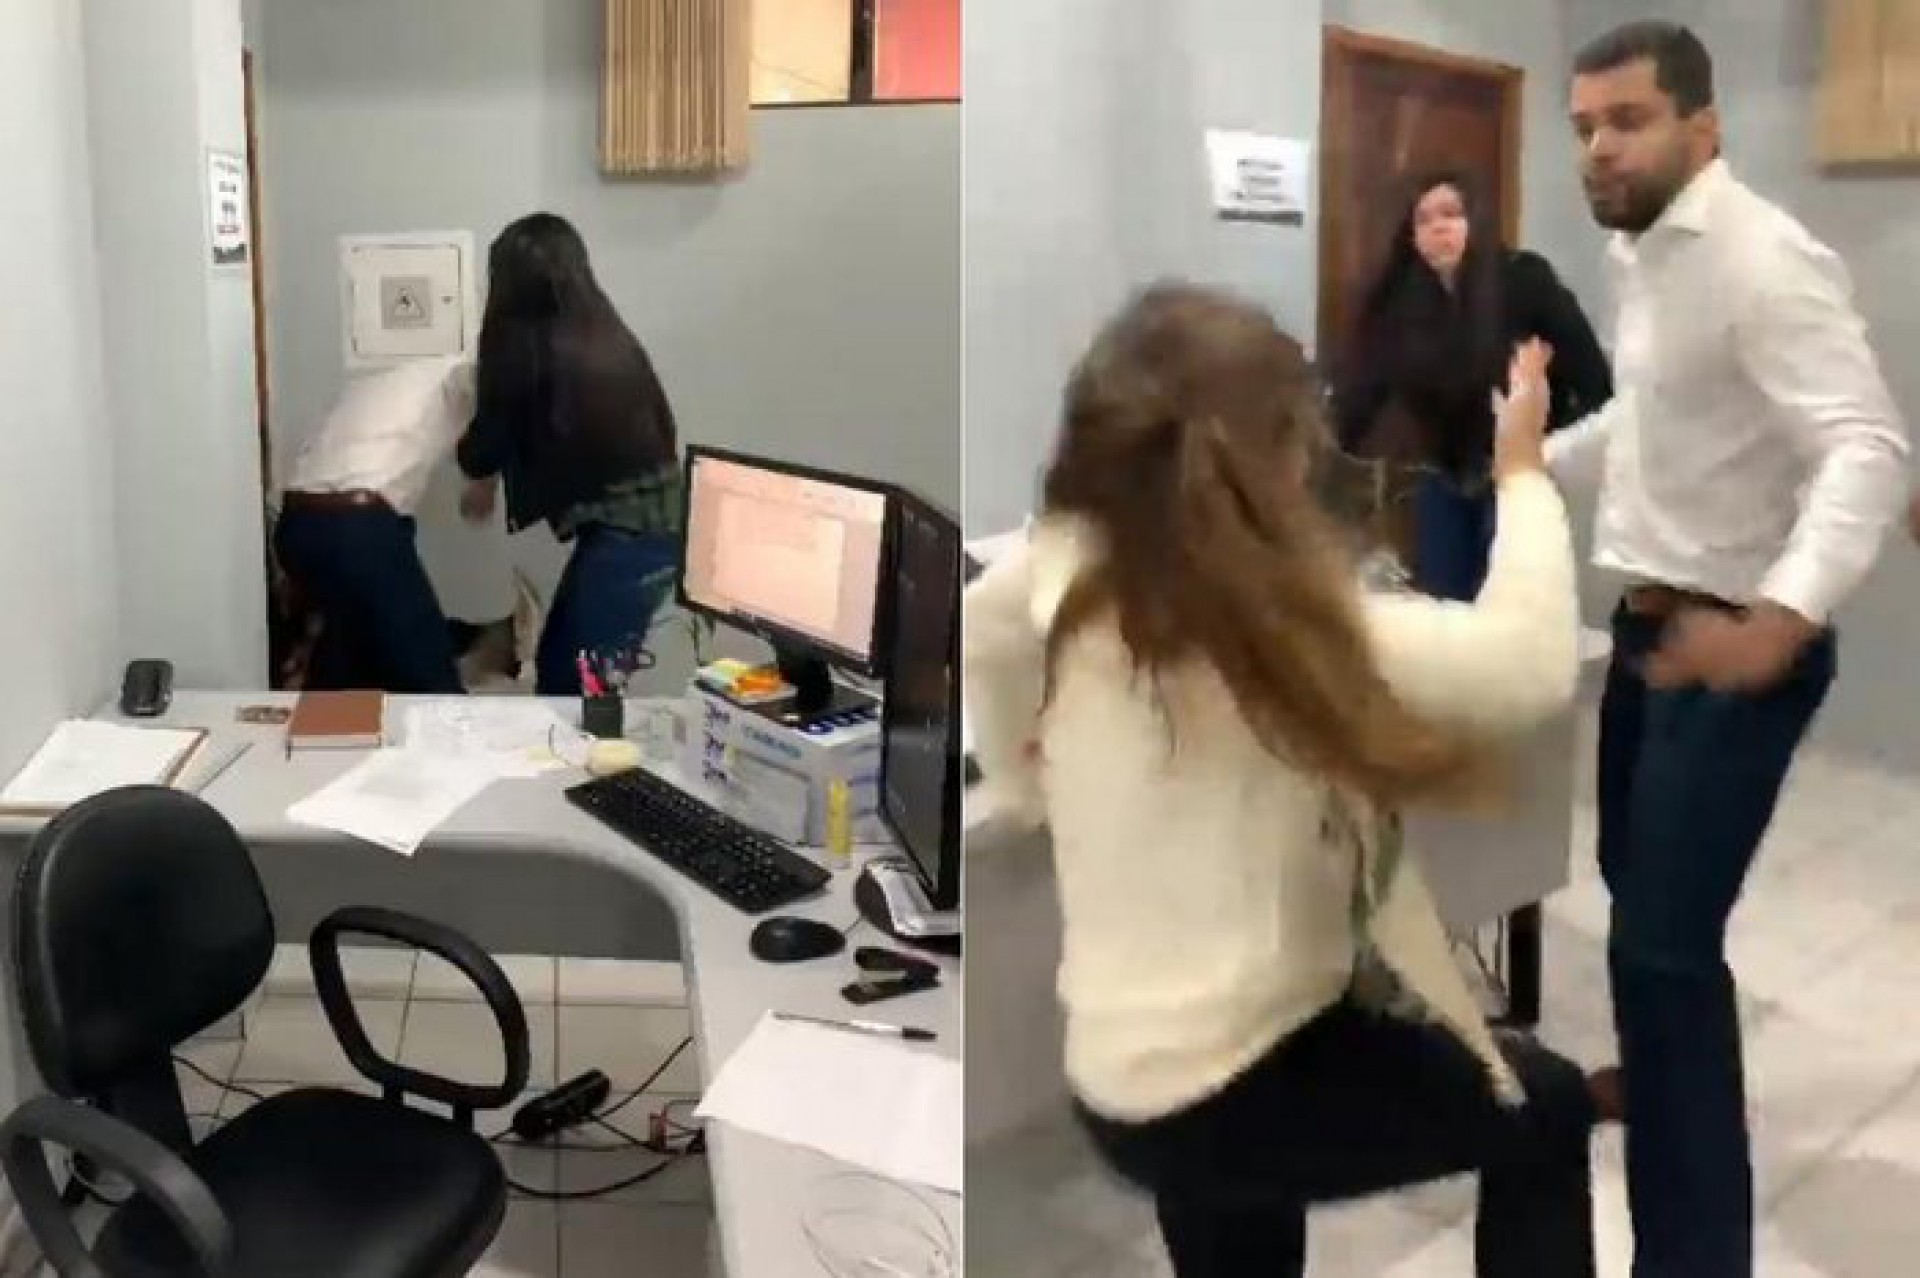 Procuradora-geral de Registro (SP) Gabriela Samadello Monteiro de Barros durante agressão pelo colega de trabalho (Foto: Reprodução)